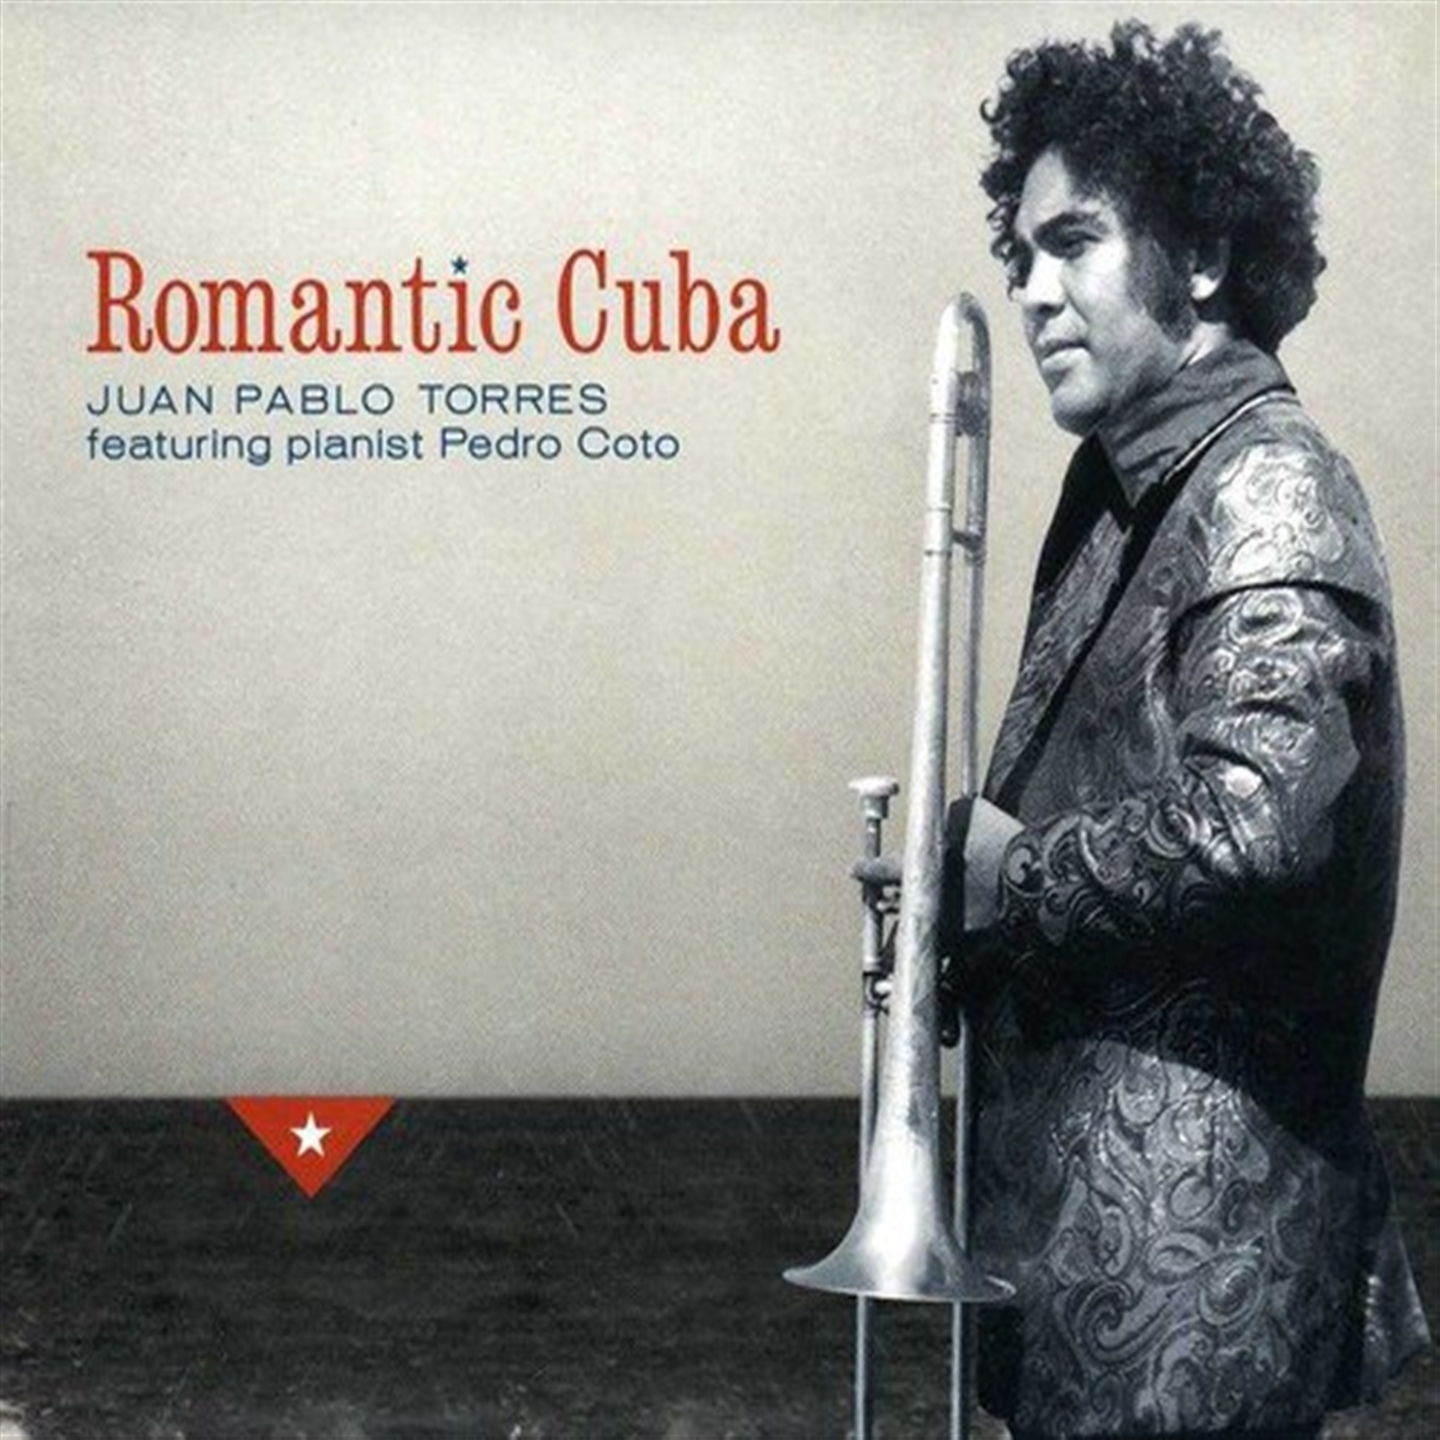 ROMANTIC CUBA